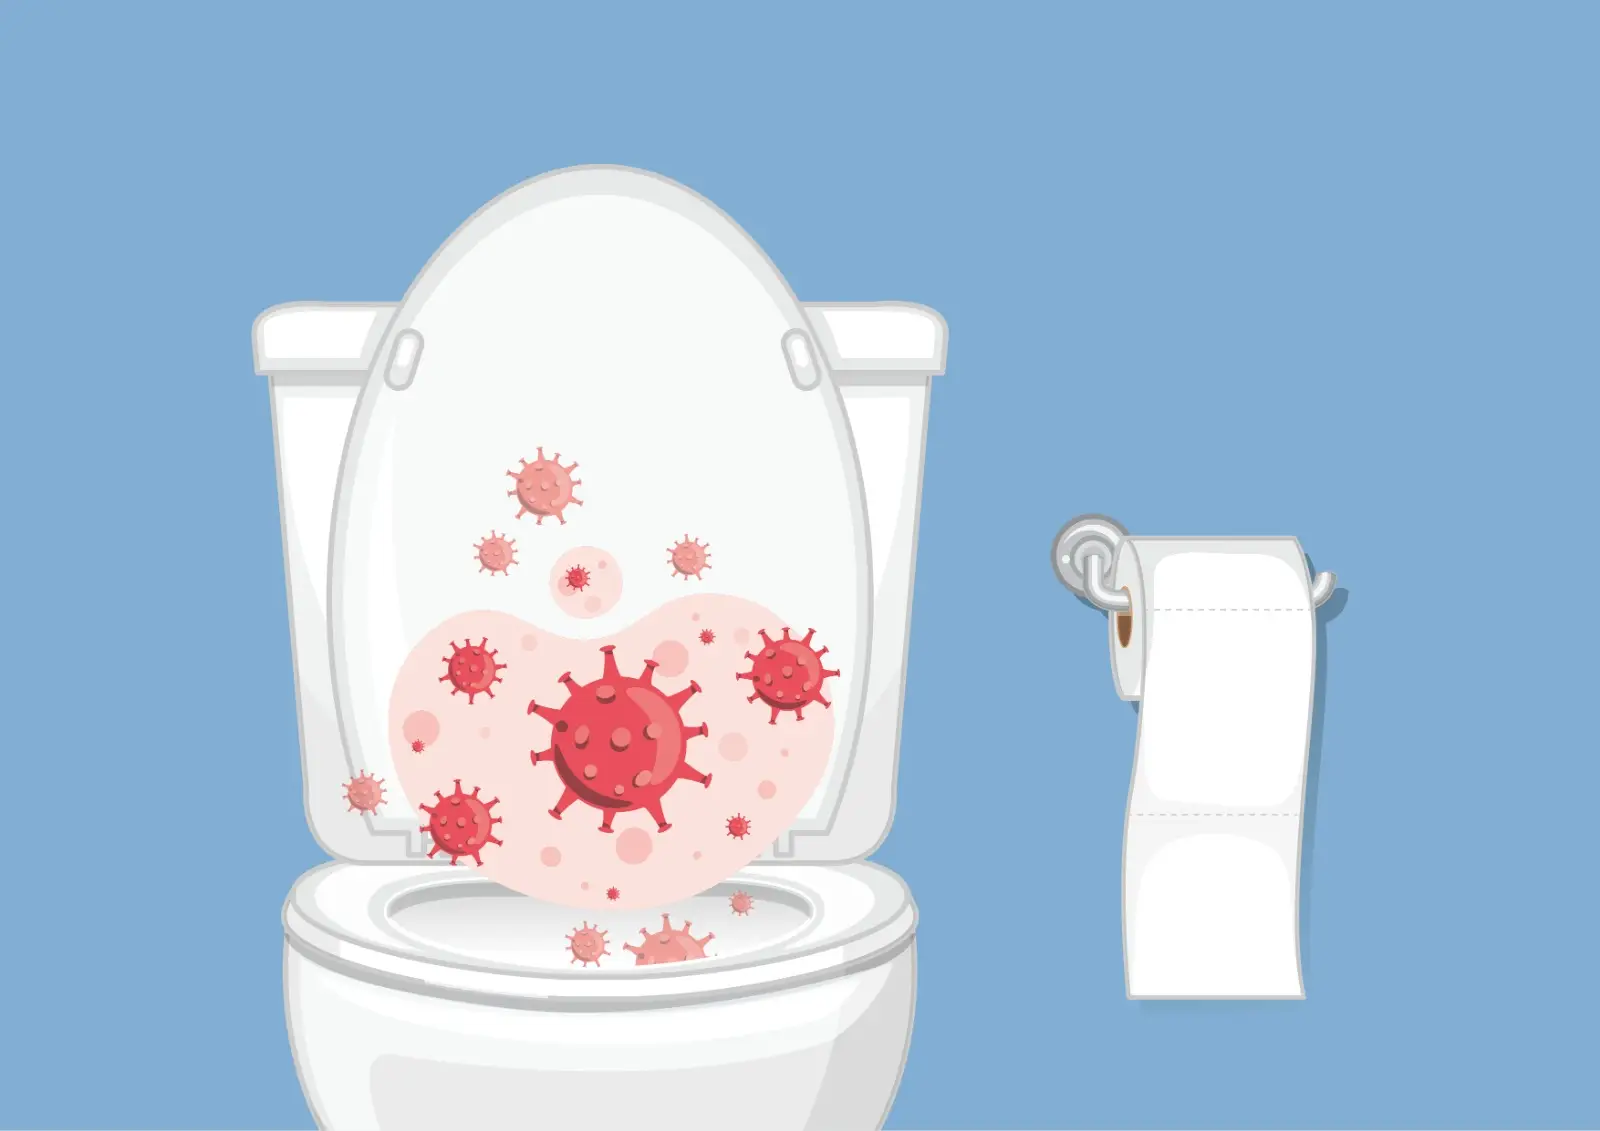 Porque se deve fechar sempre o tampo da sanita antes de puxar o autoclismo?